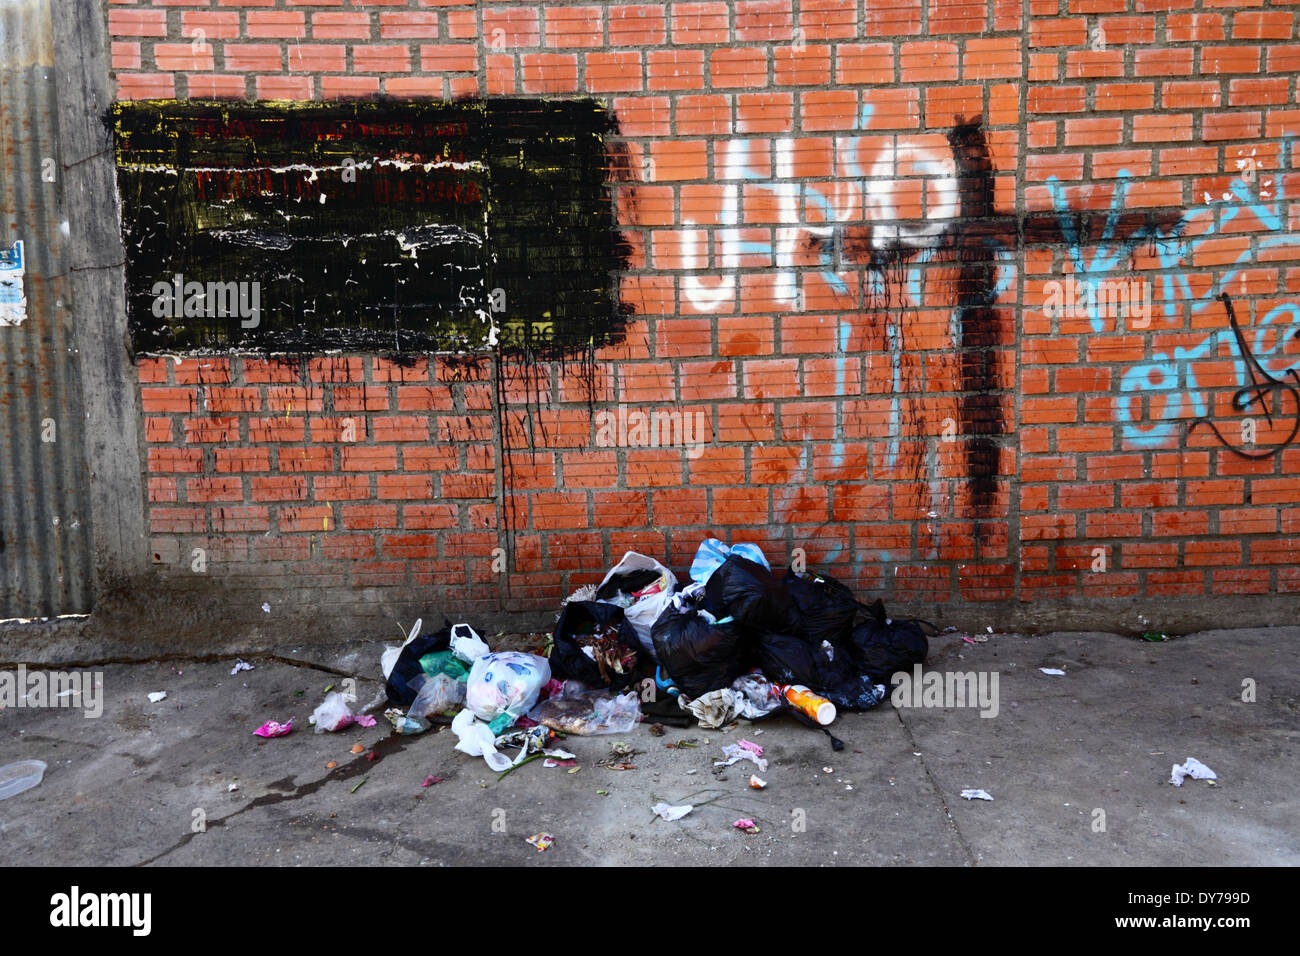 Les ordures déversées sur rue. L'écriture sur le mur de dire aux gens de ne pas déverser les ordures a été peint, La Paz, Bolivie Banque D'Images